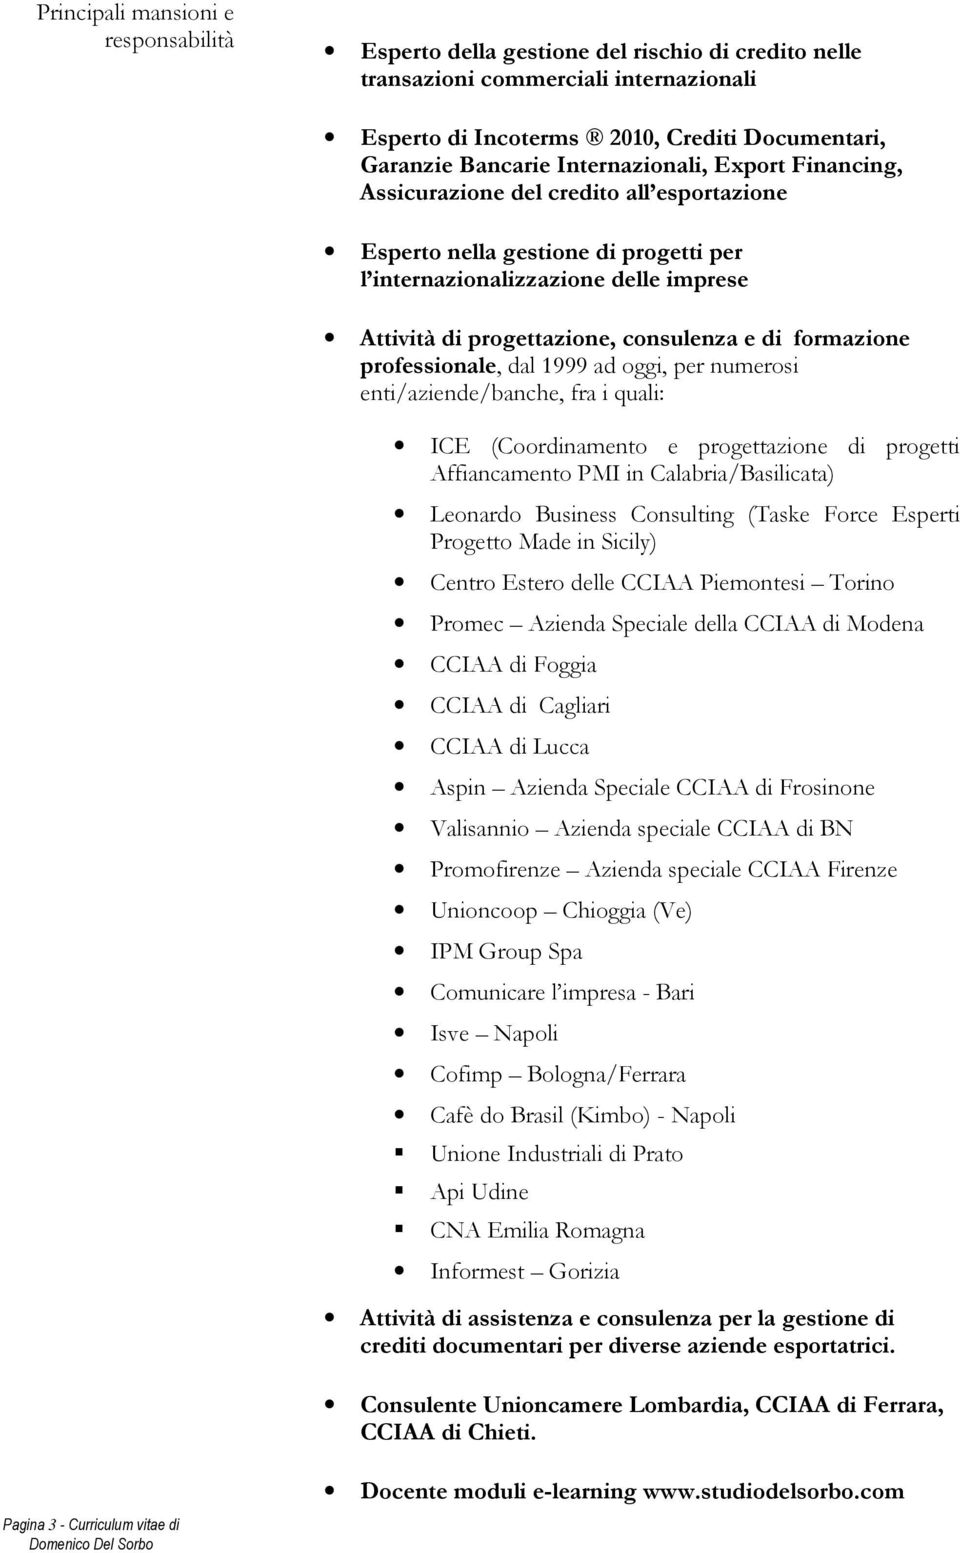 professionale, dal 1999 ad oggi, per numerosi enti/aziende/banche, fra i quali: ICE (Coordinamento e progettazione di progetti Affiancamento PMI in Calabria/Basilicata) Leonardo Business Consulting